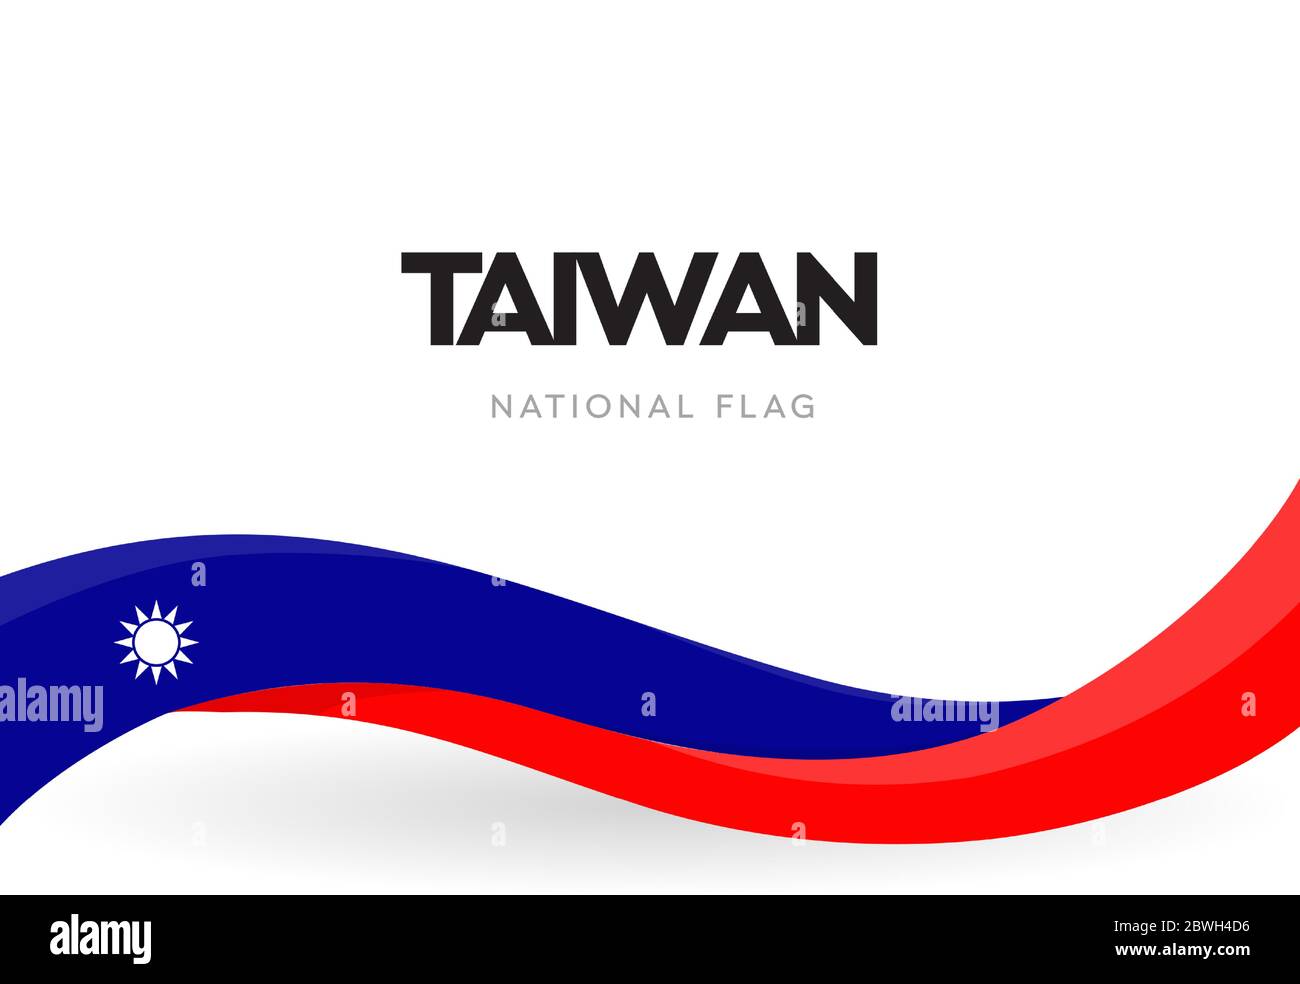 Bandiera di Taiwan, nastro ondulato con colori di bandiera nazionale taiwanese su sfondo bianco per il giorno dell'Indipendenza o festività nazionali, vettore isolato Illustrazione Vettoriale